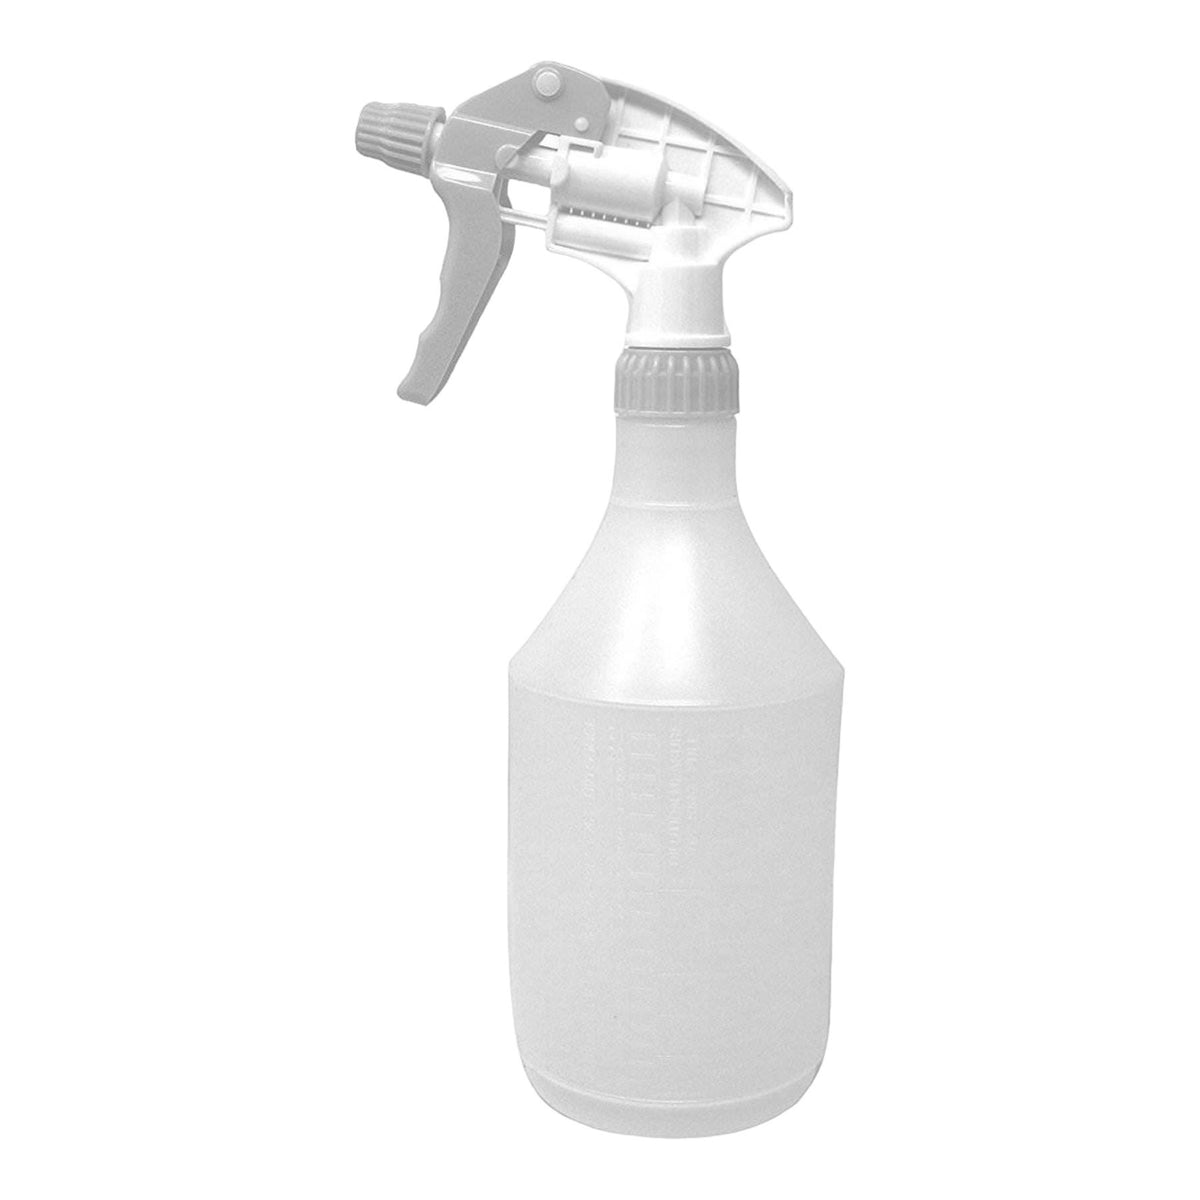 Single Reusable White Trigger Spray Bottle 750ml Heavy Duty